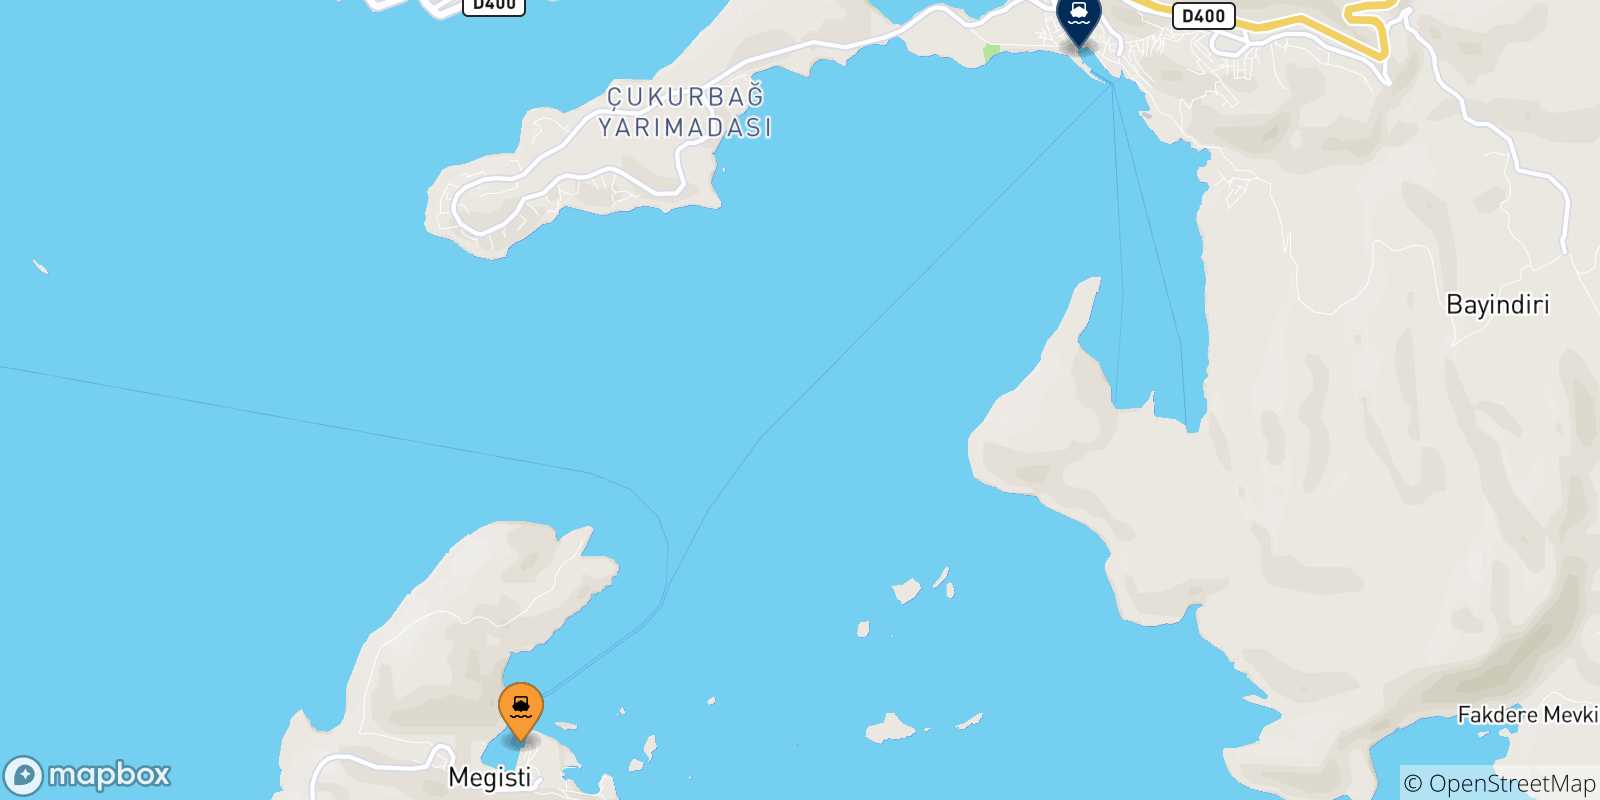 Mappa delle possibili rotte tra le Isole Dodecaneso e Kas